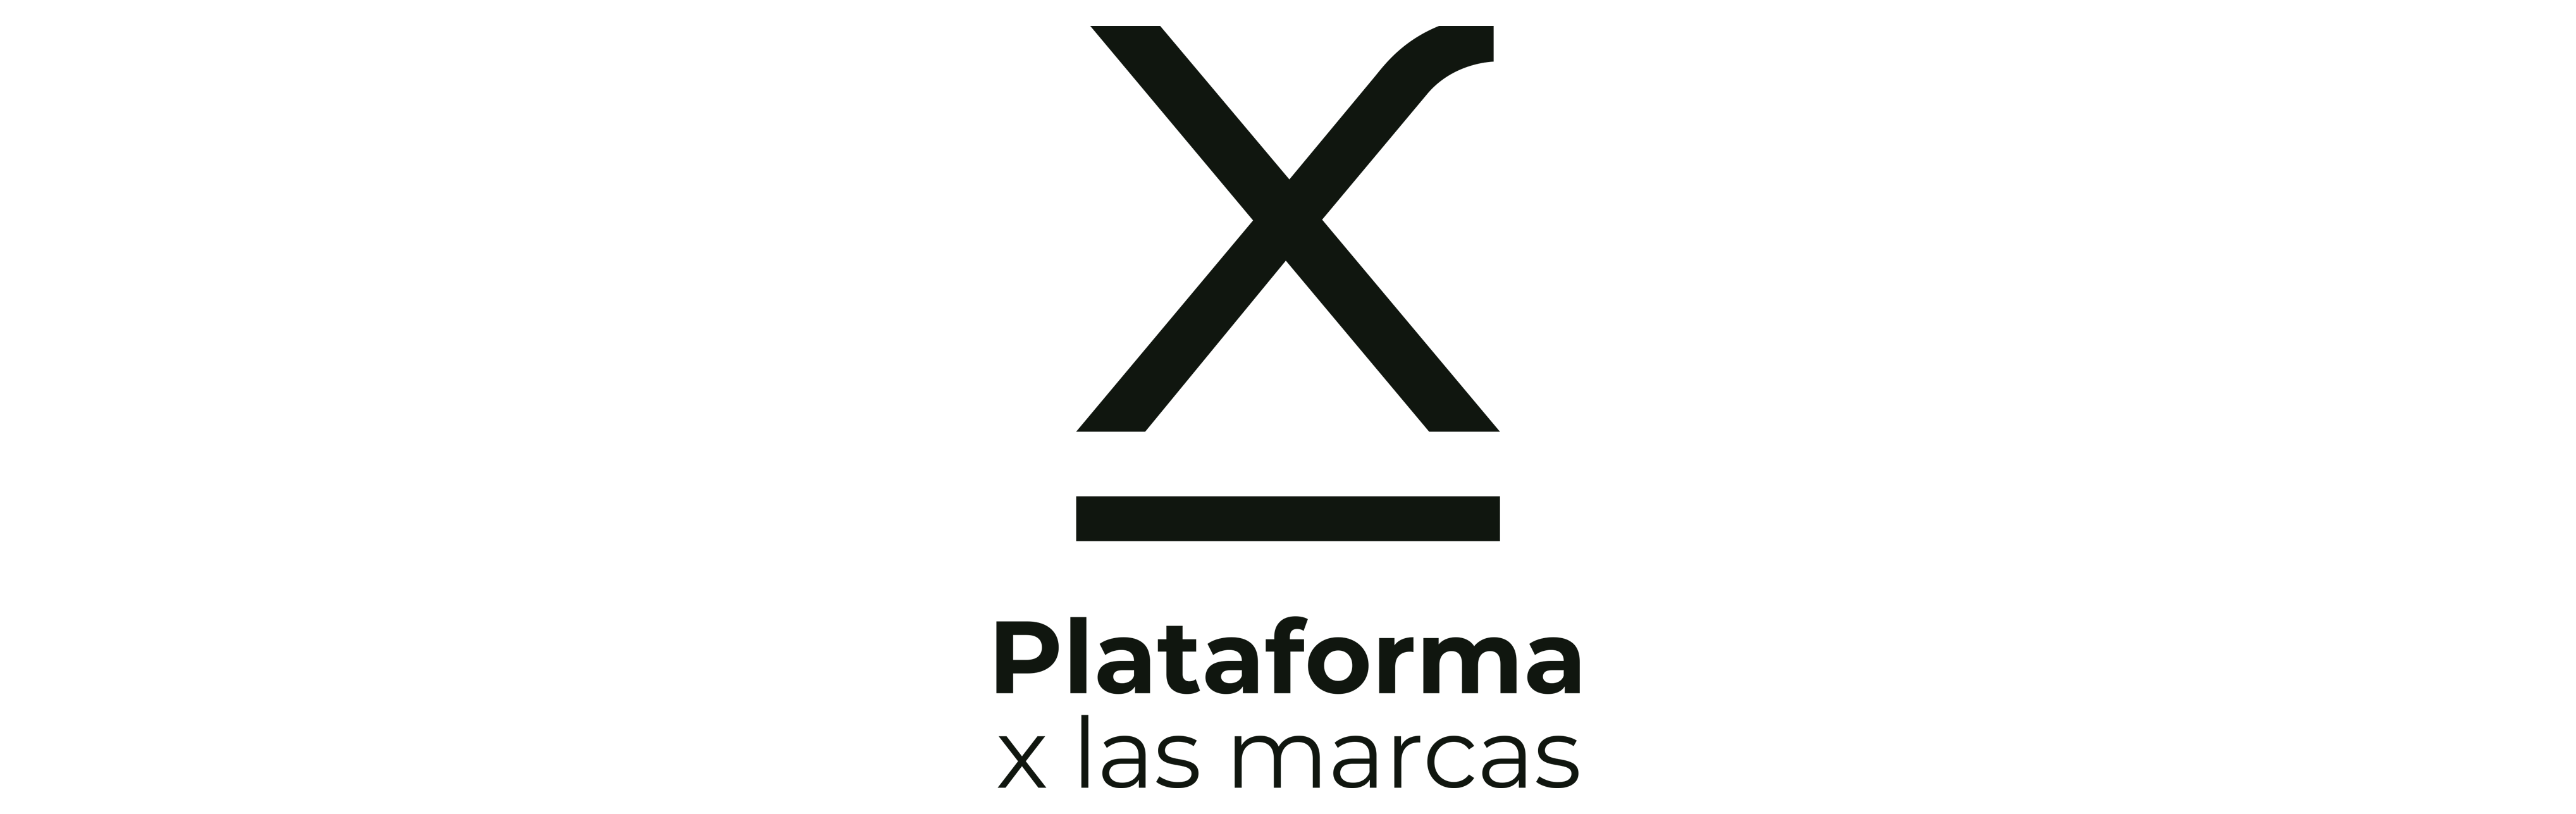 Plataforma x las marcas